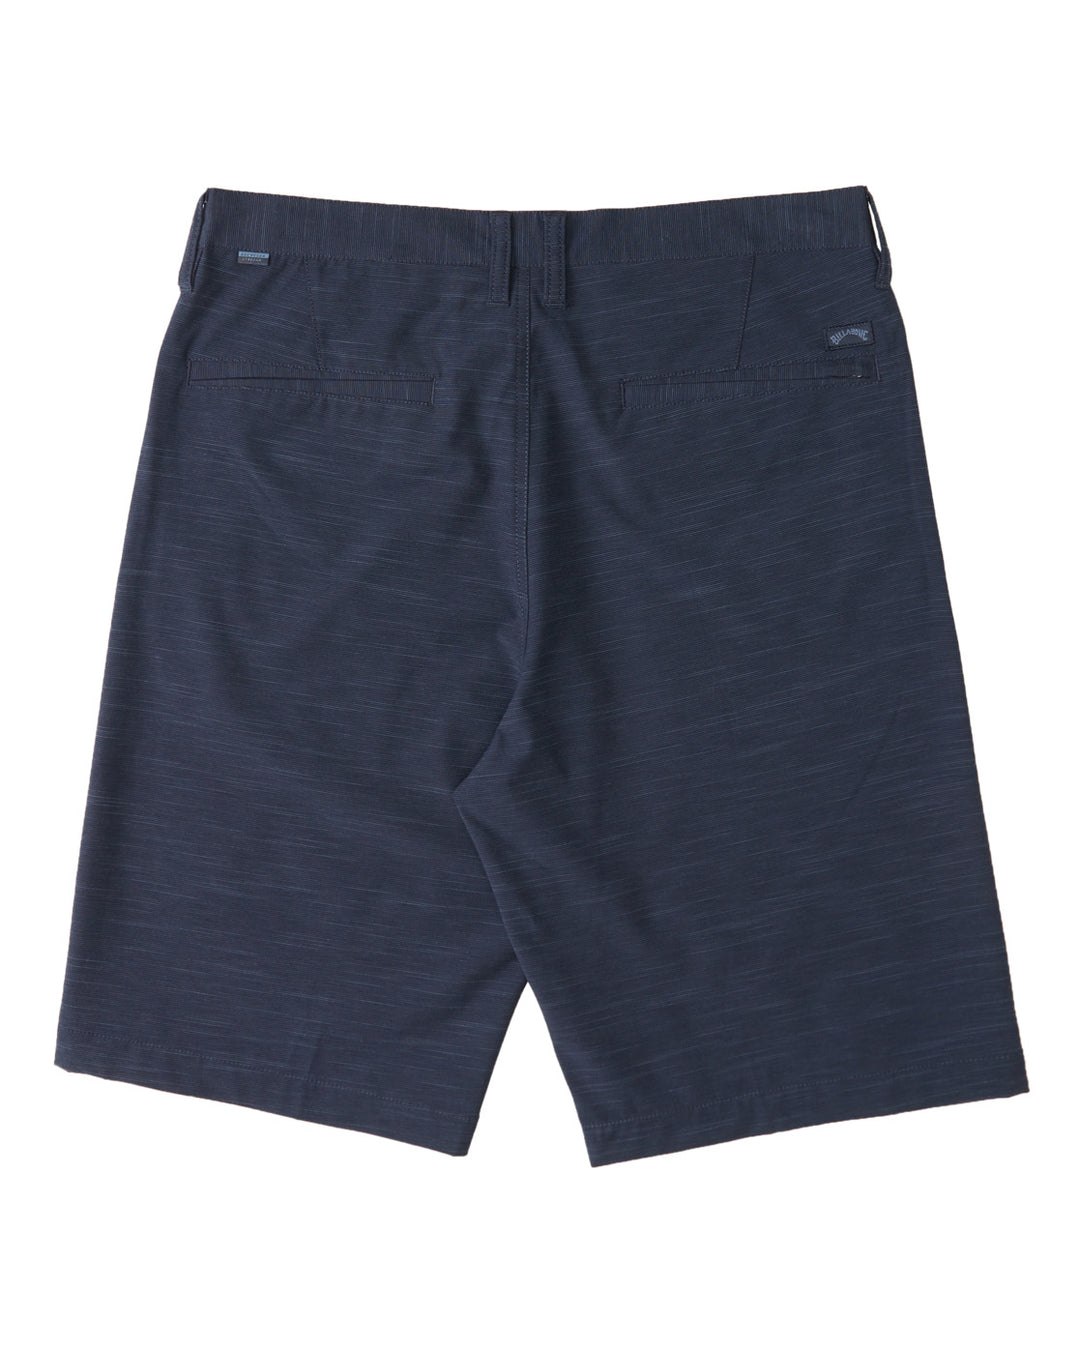 Billabong Boys' Crossfire Slub Shorts 18" - Navy Blue - Sun Diego Boardshop